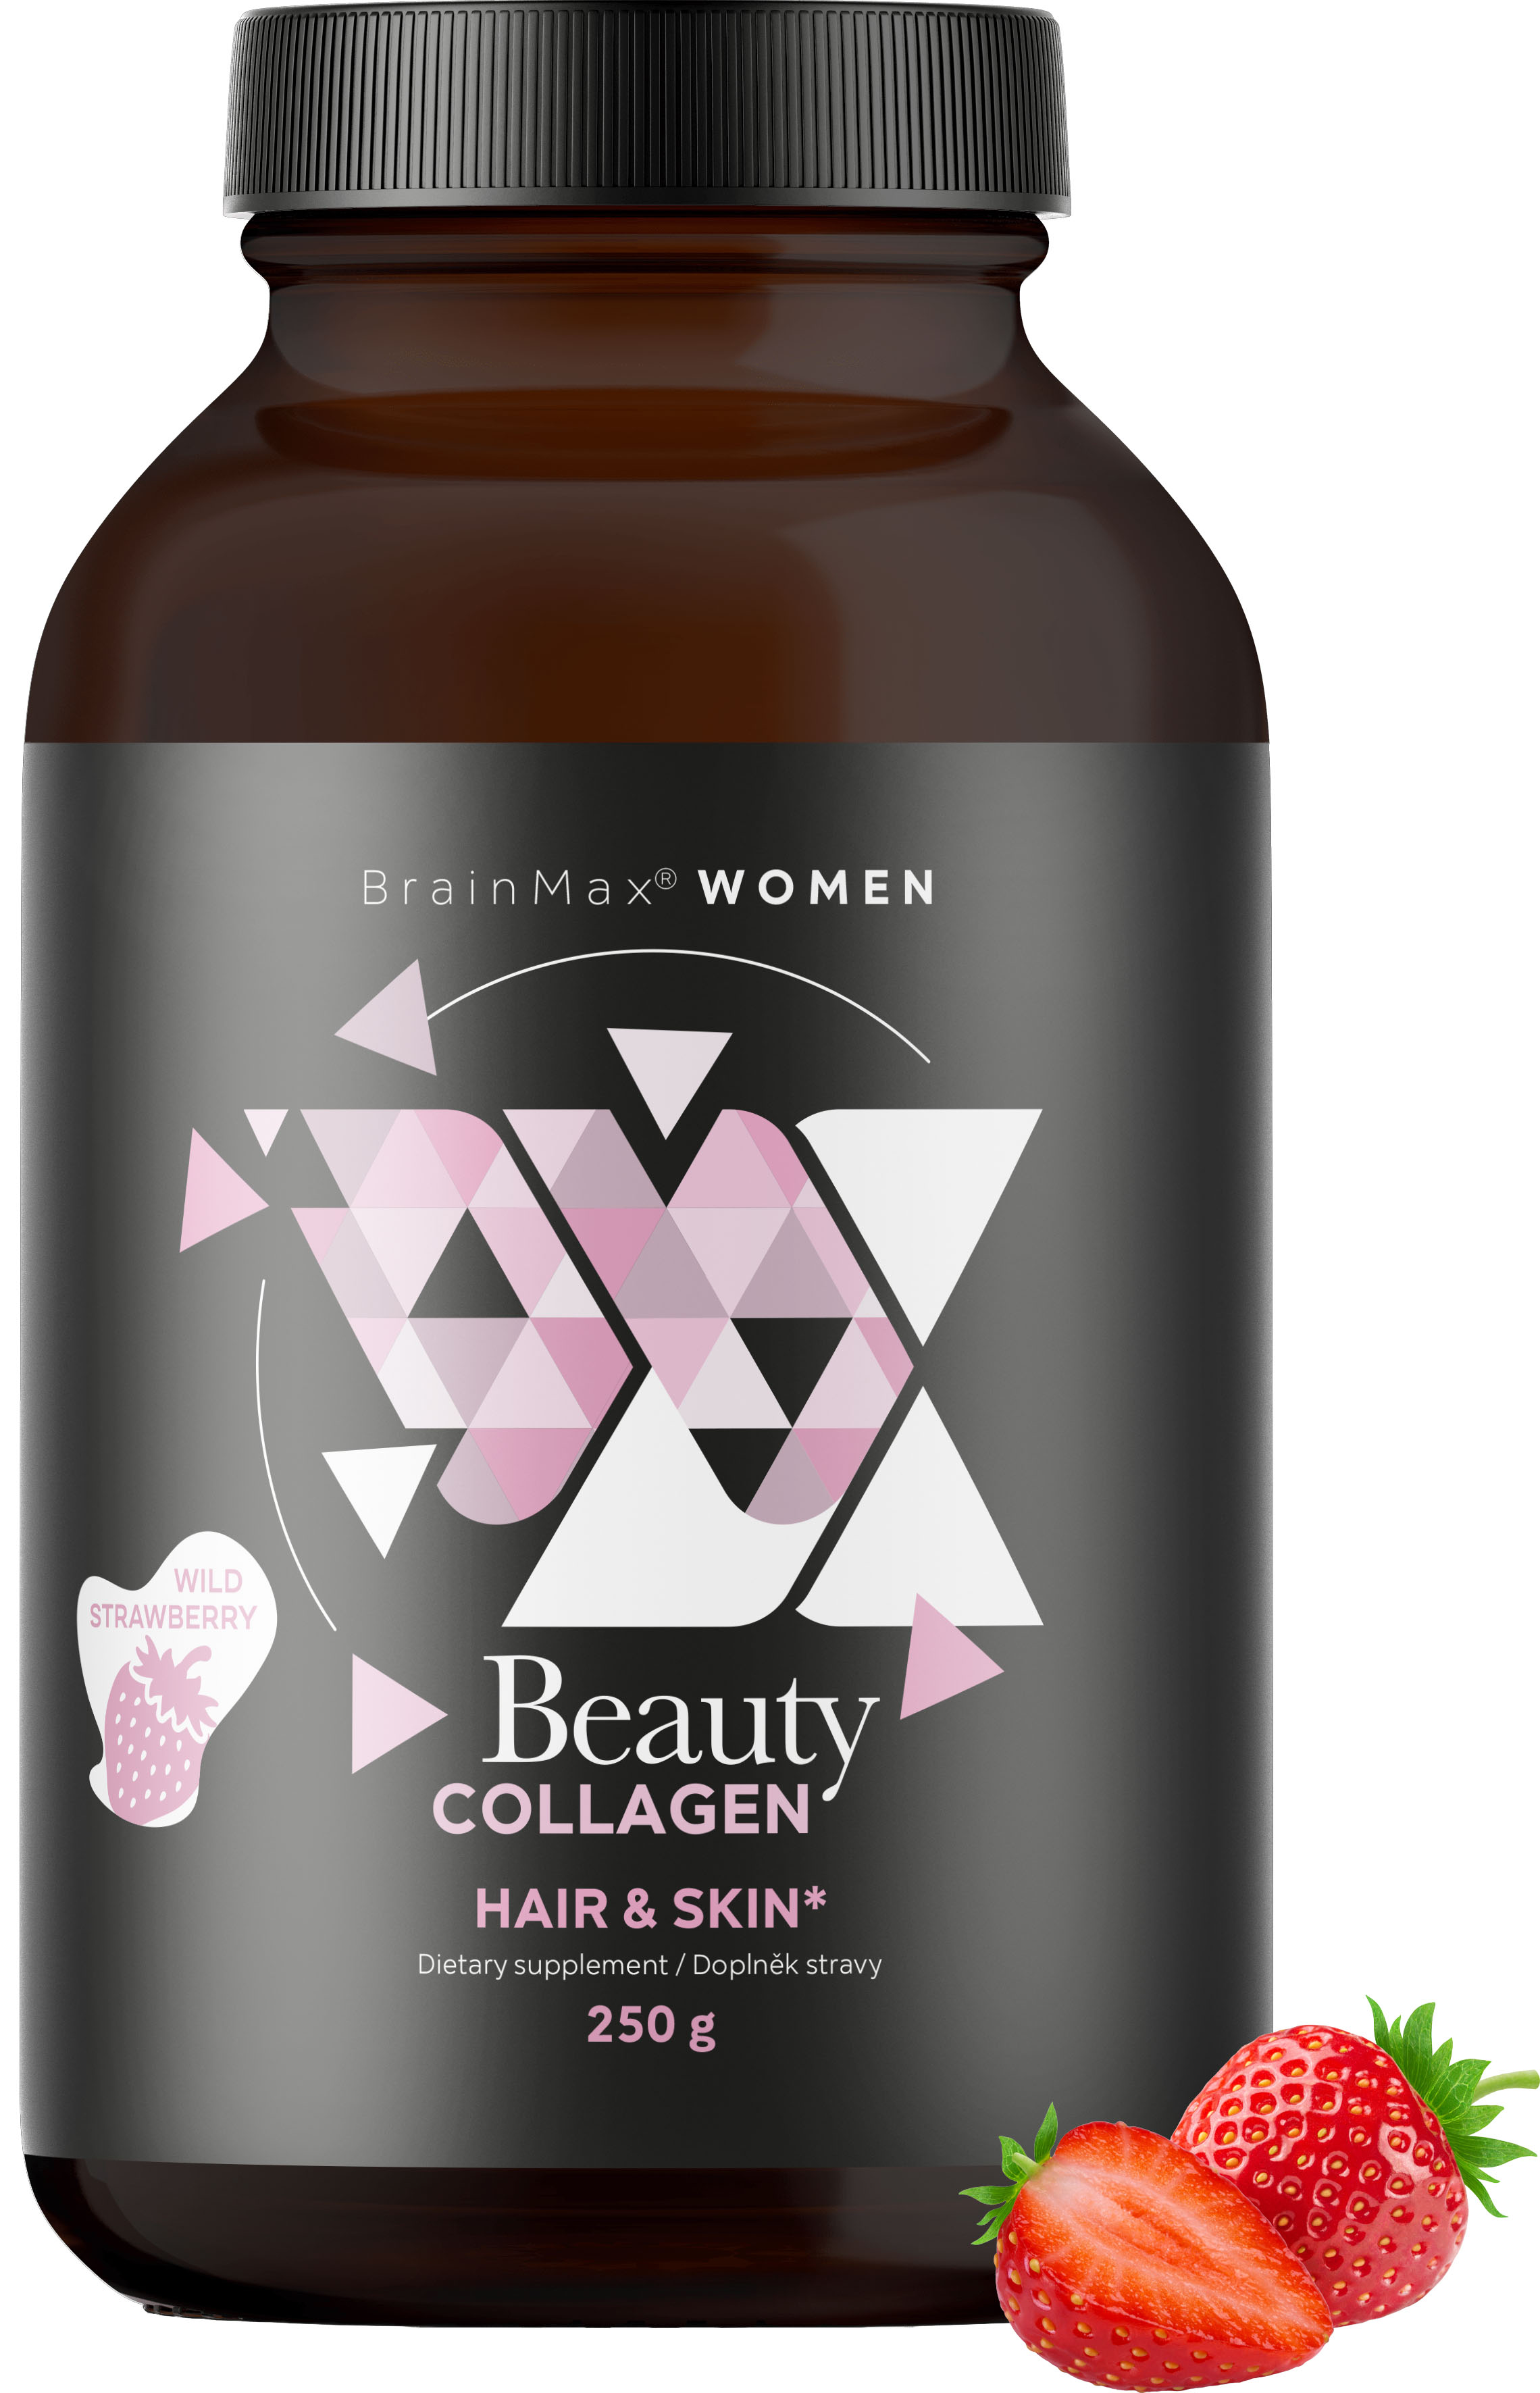 BrainMax Women Beauty Fish Collagen, mořský rybí kolagen Naticol®, 250 g Příchuť: Lesní jahoda Hydrolyzovaný mořský kolagen Naticol®, kyselina hyaluronová a vitamín C, doplněk stravy